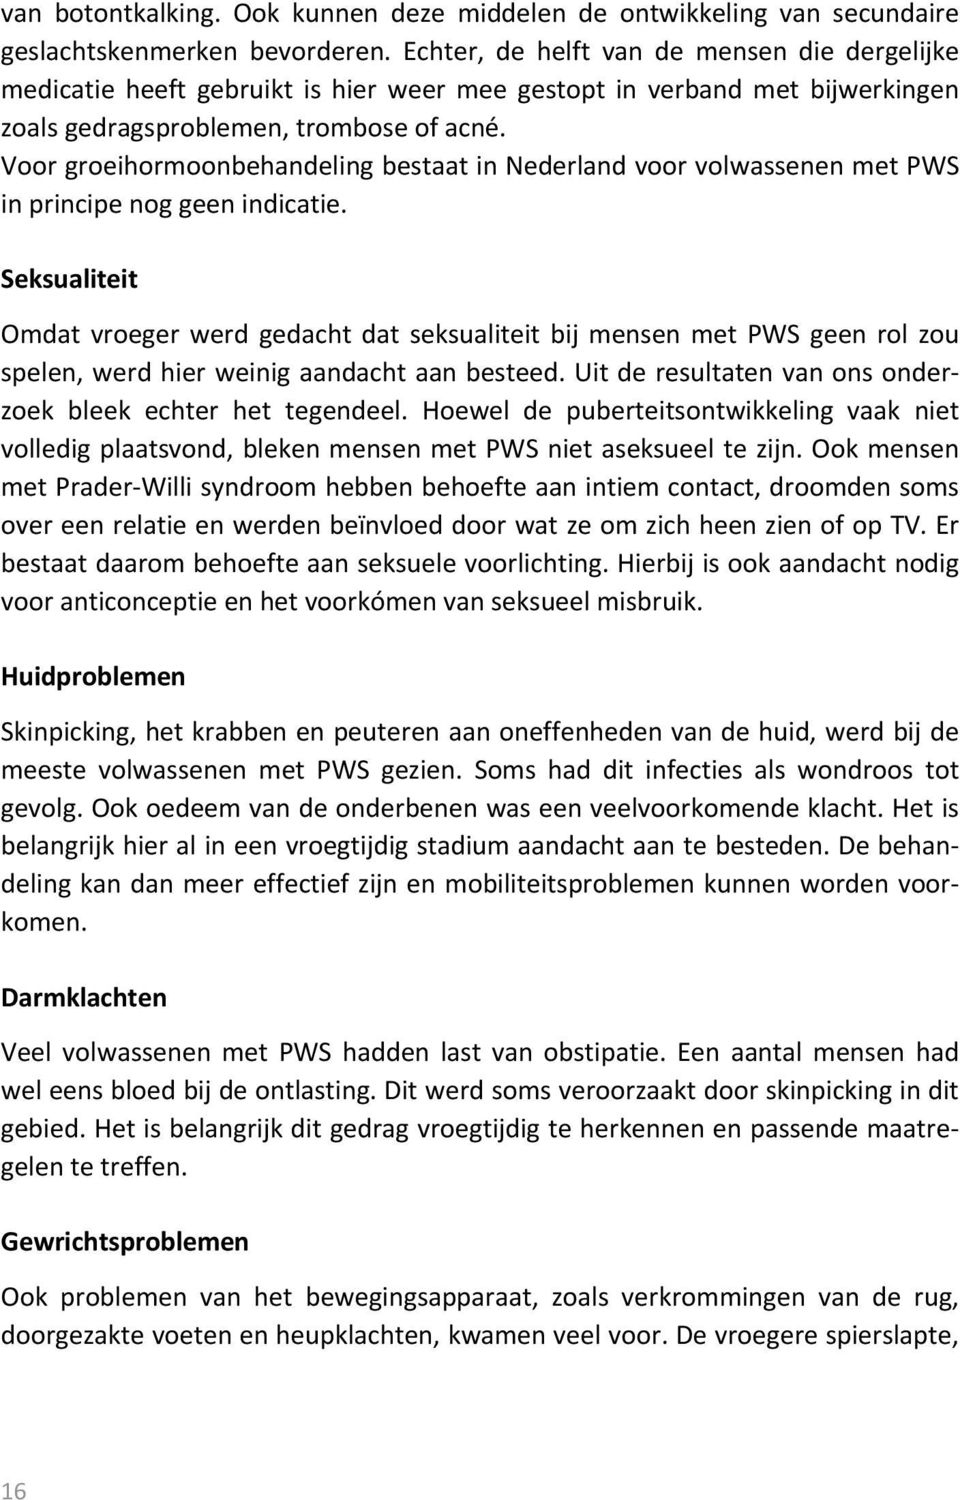 Voor groeihormoonbehandeling bestaat in Nederland voor volwassenen met PWS in principe nog geen indicatie.